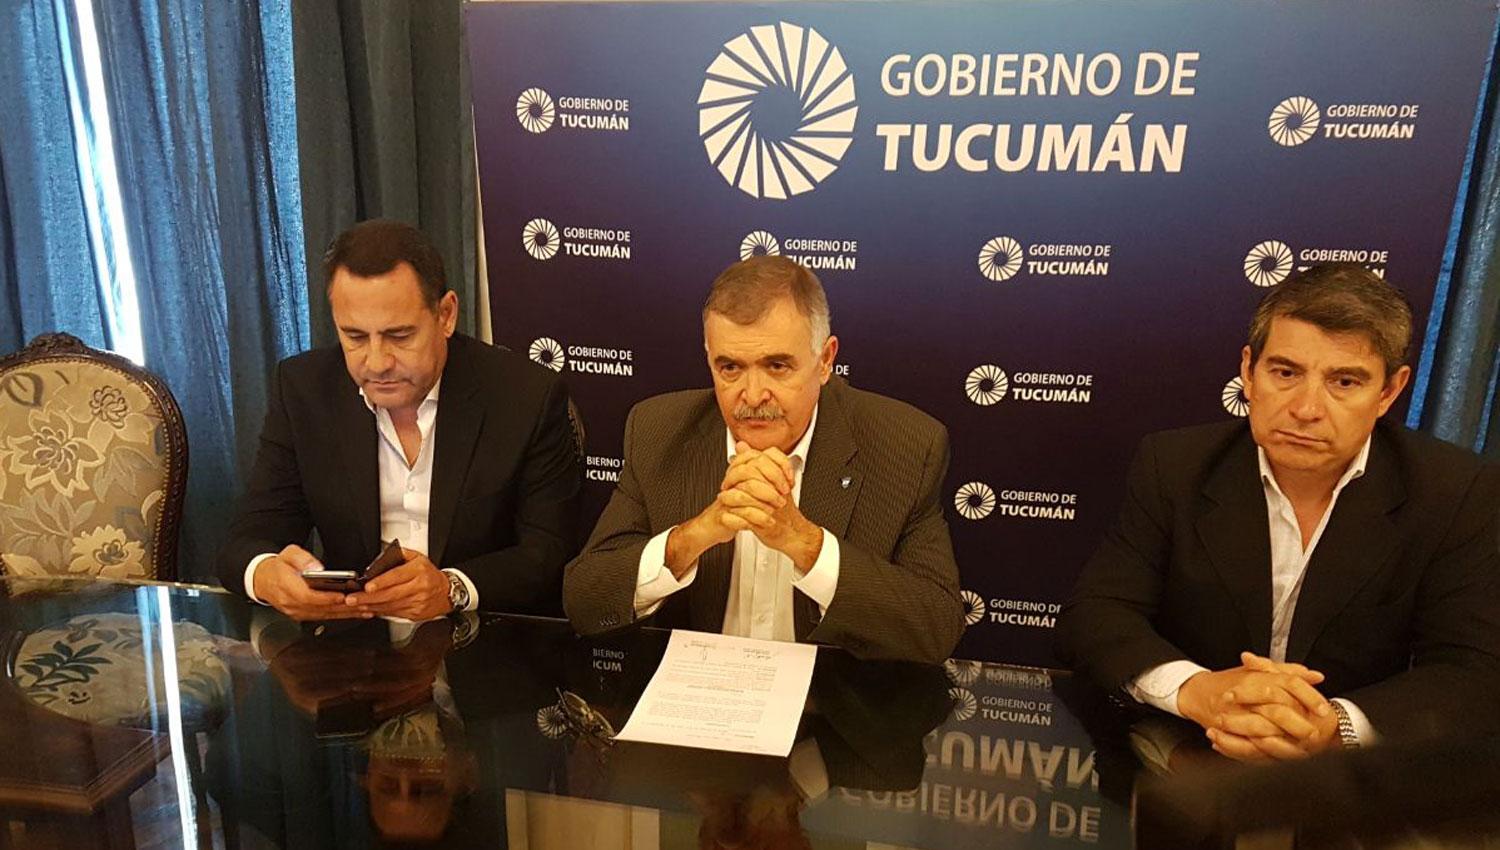 OSVALDO JALDO. El vicegobernador, junto a Regino Amado (ministro de Gobierno) y Claudio Maley (ministro de Seguridad). LA GACETA / SANTIAGO HERNÁNDEZ